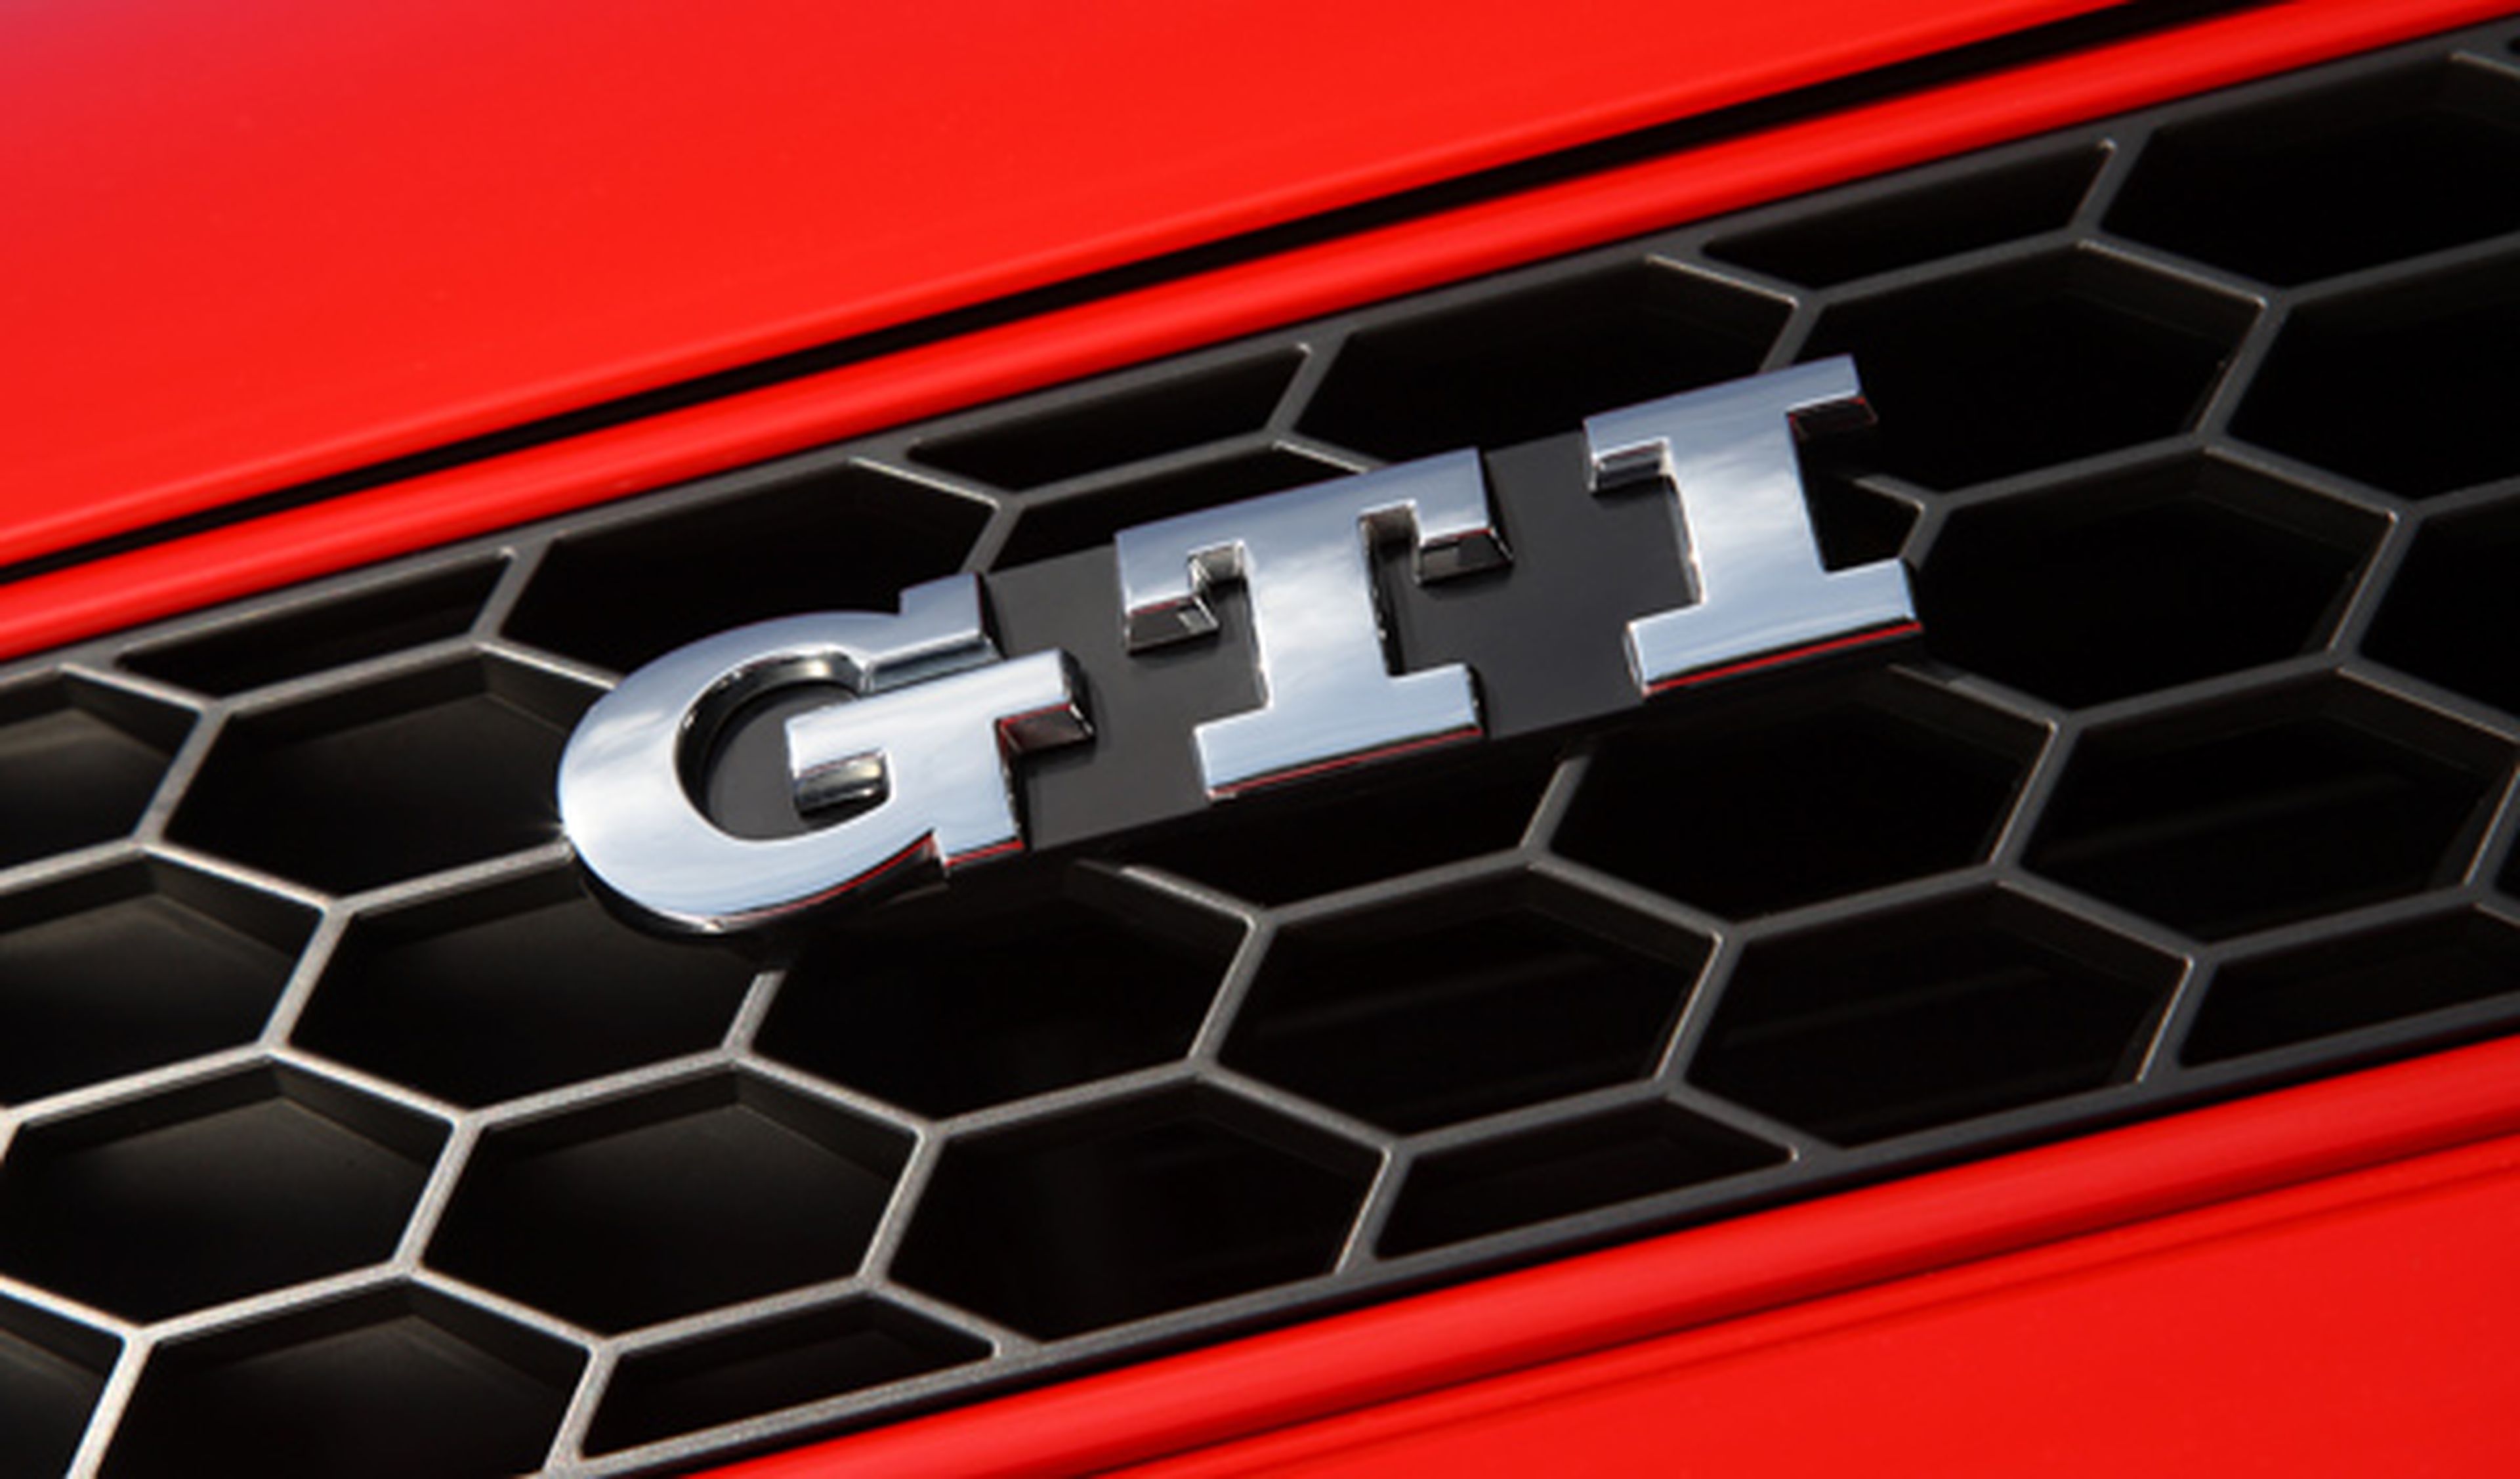 Cambio manual de 6 marchas para el Volkswagen Polo GTI 2015